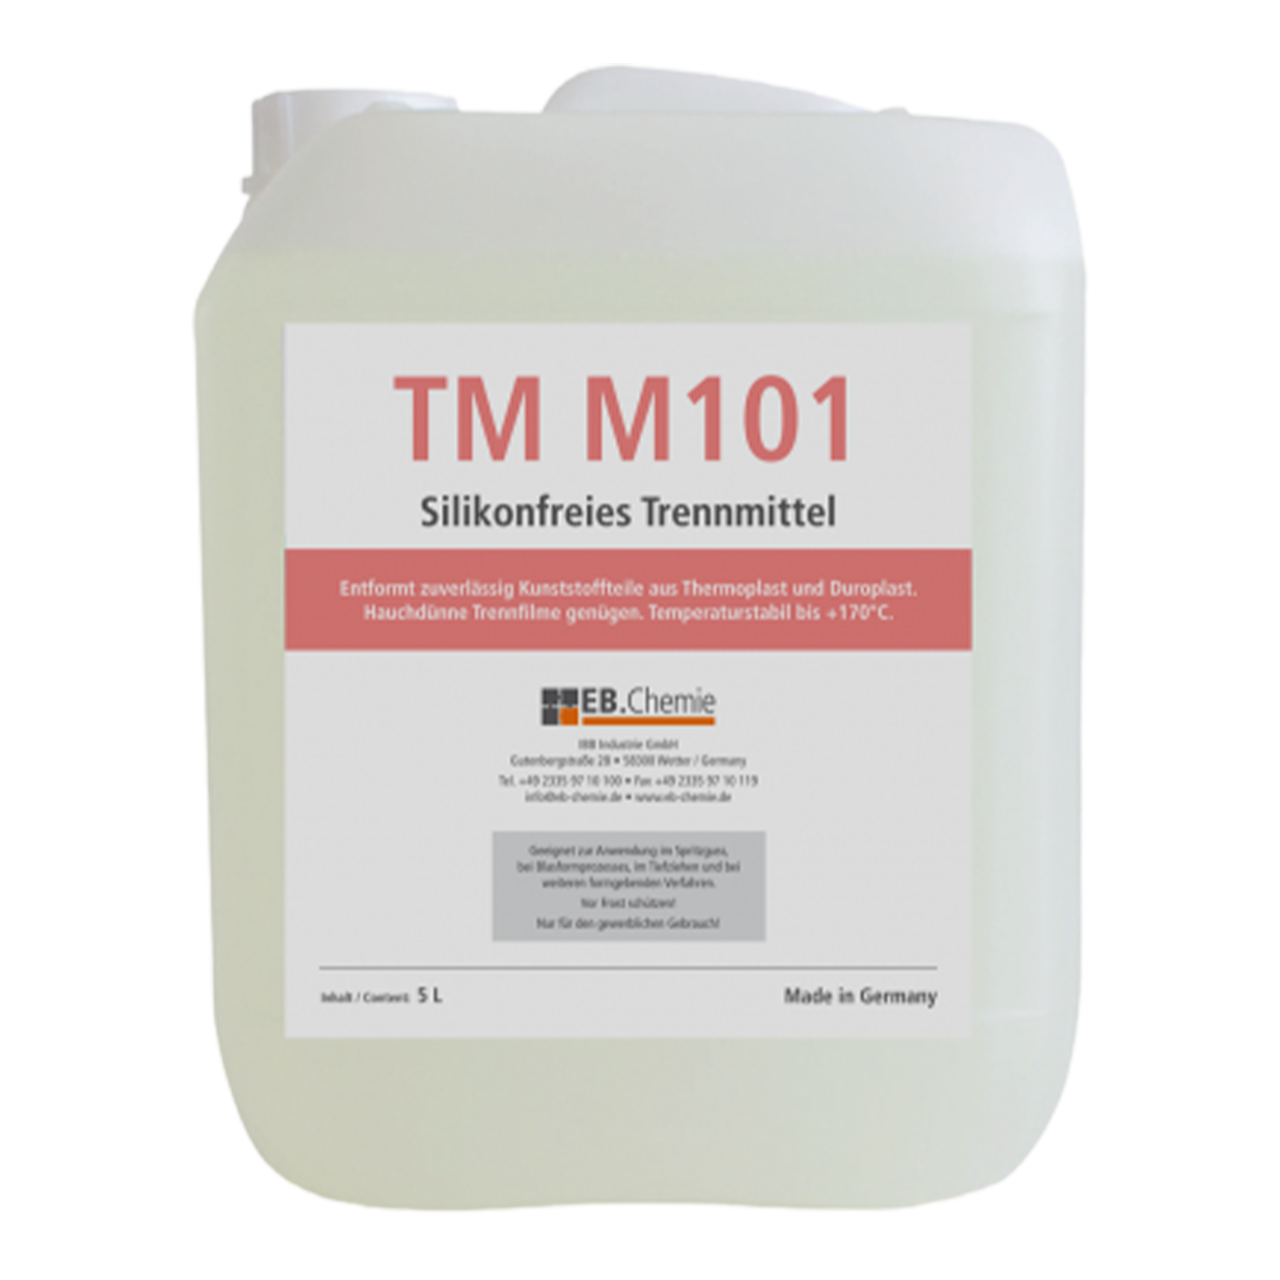 Trennmittel TMM101 Kanister